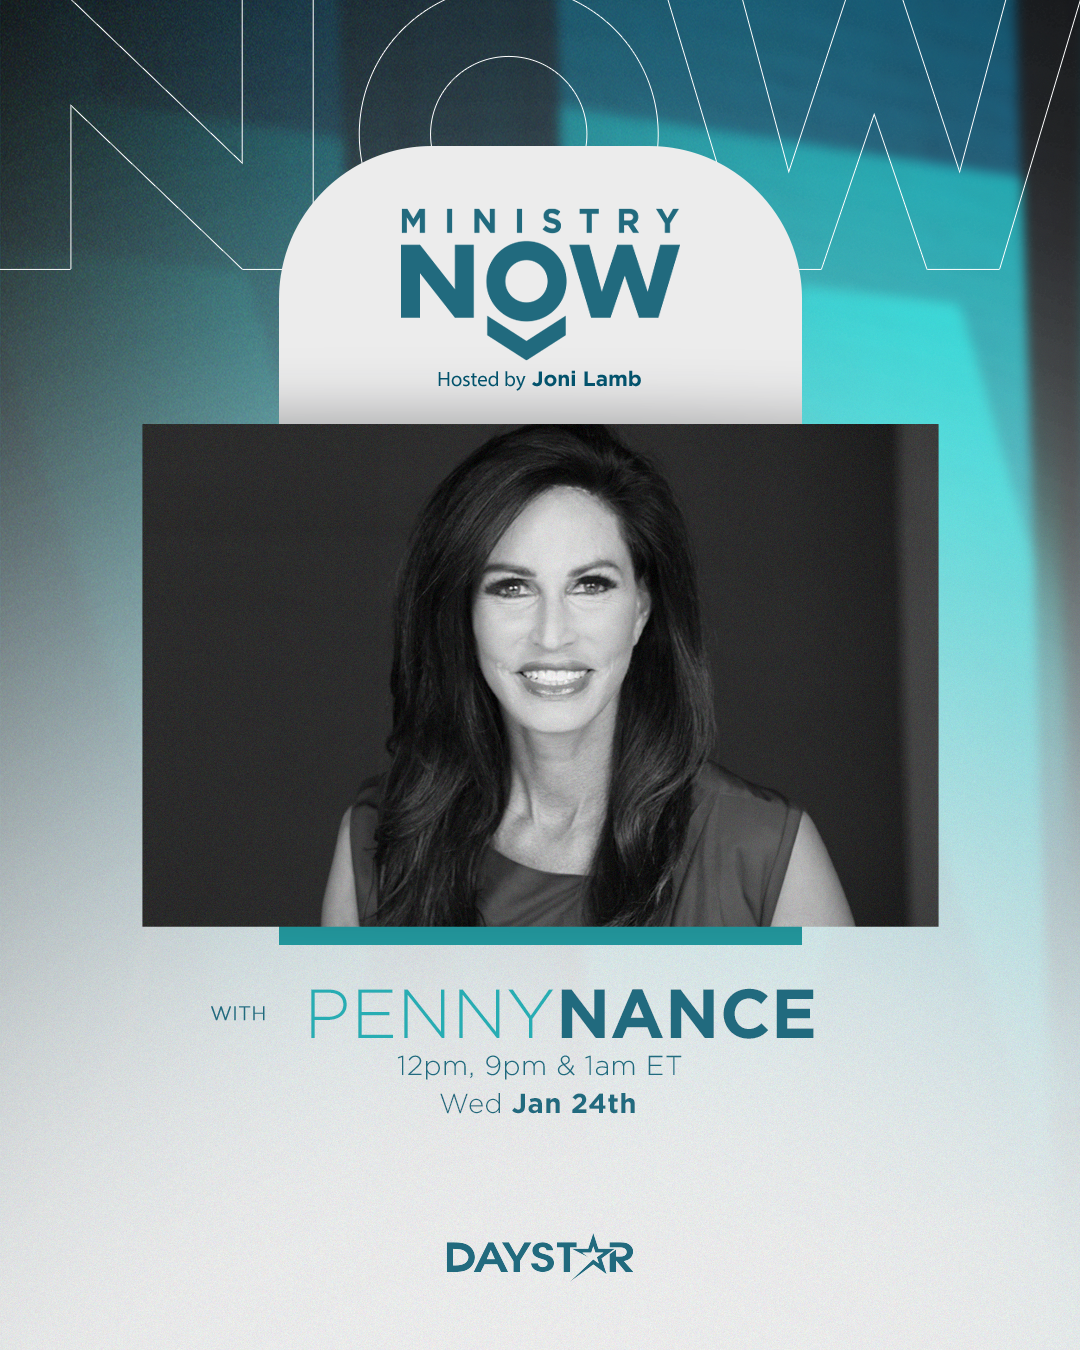 Media Alert: Penny Nance on Daystar Wednesday, January 24